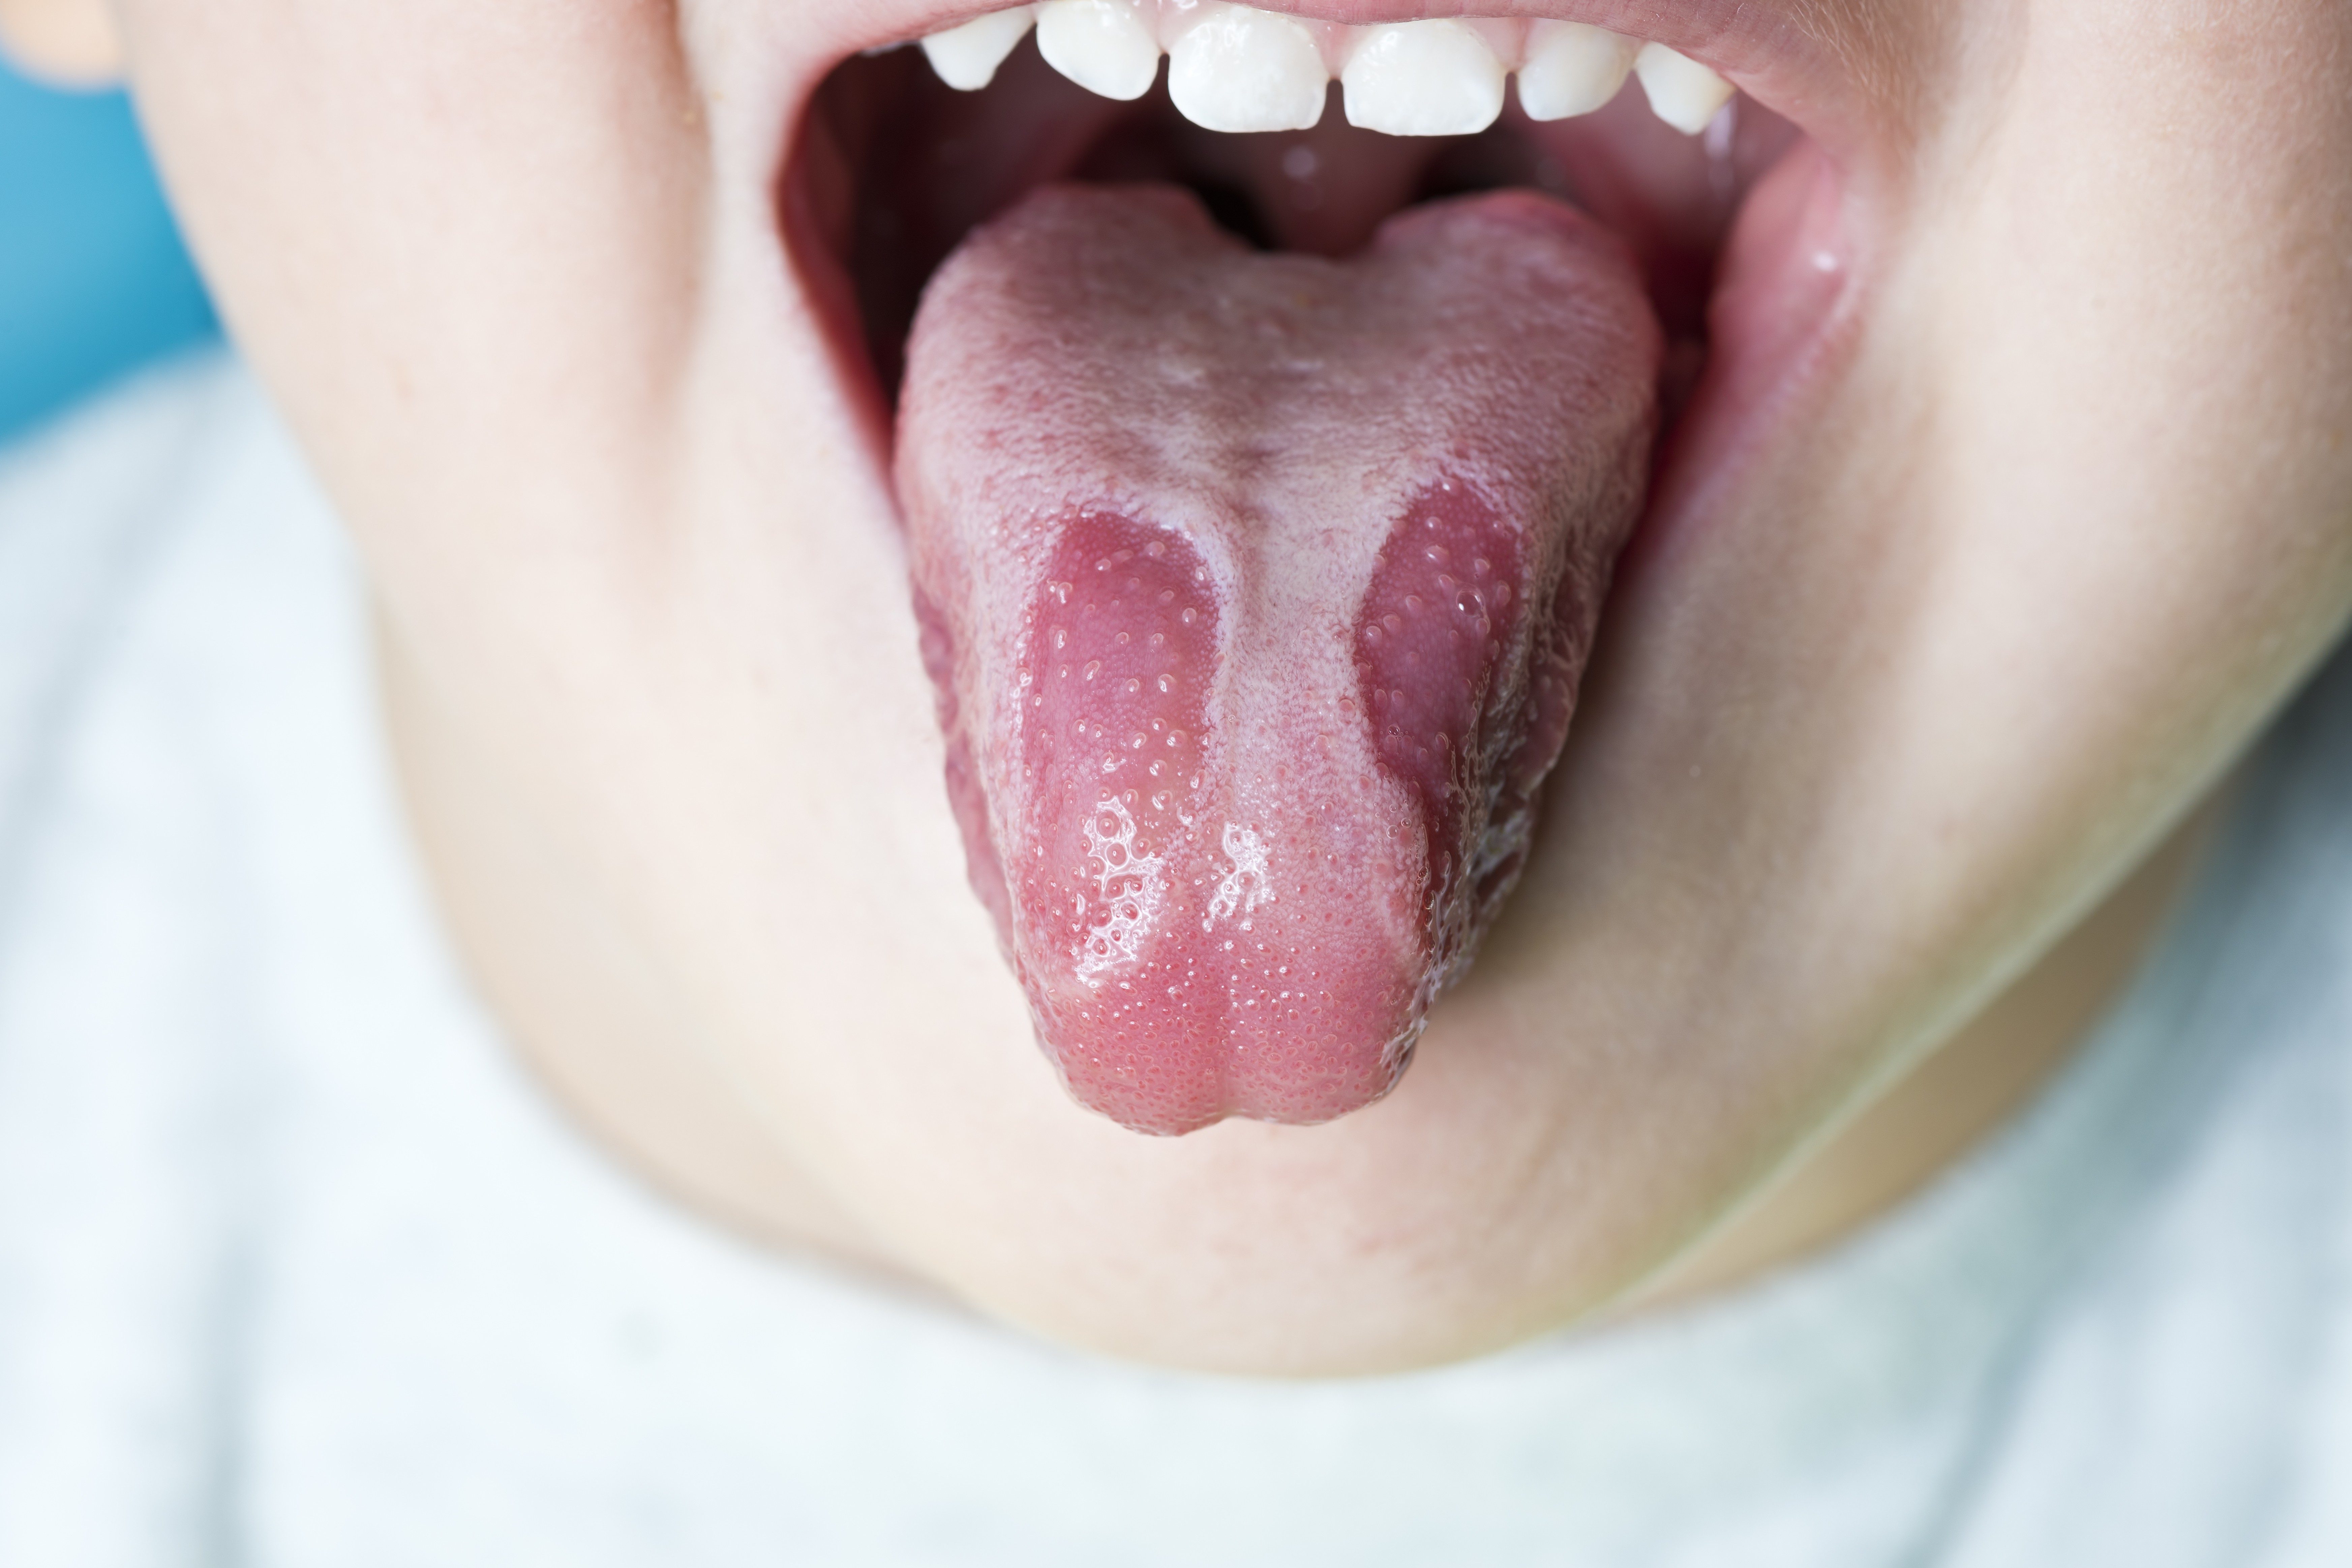 Tongue clues